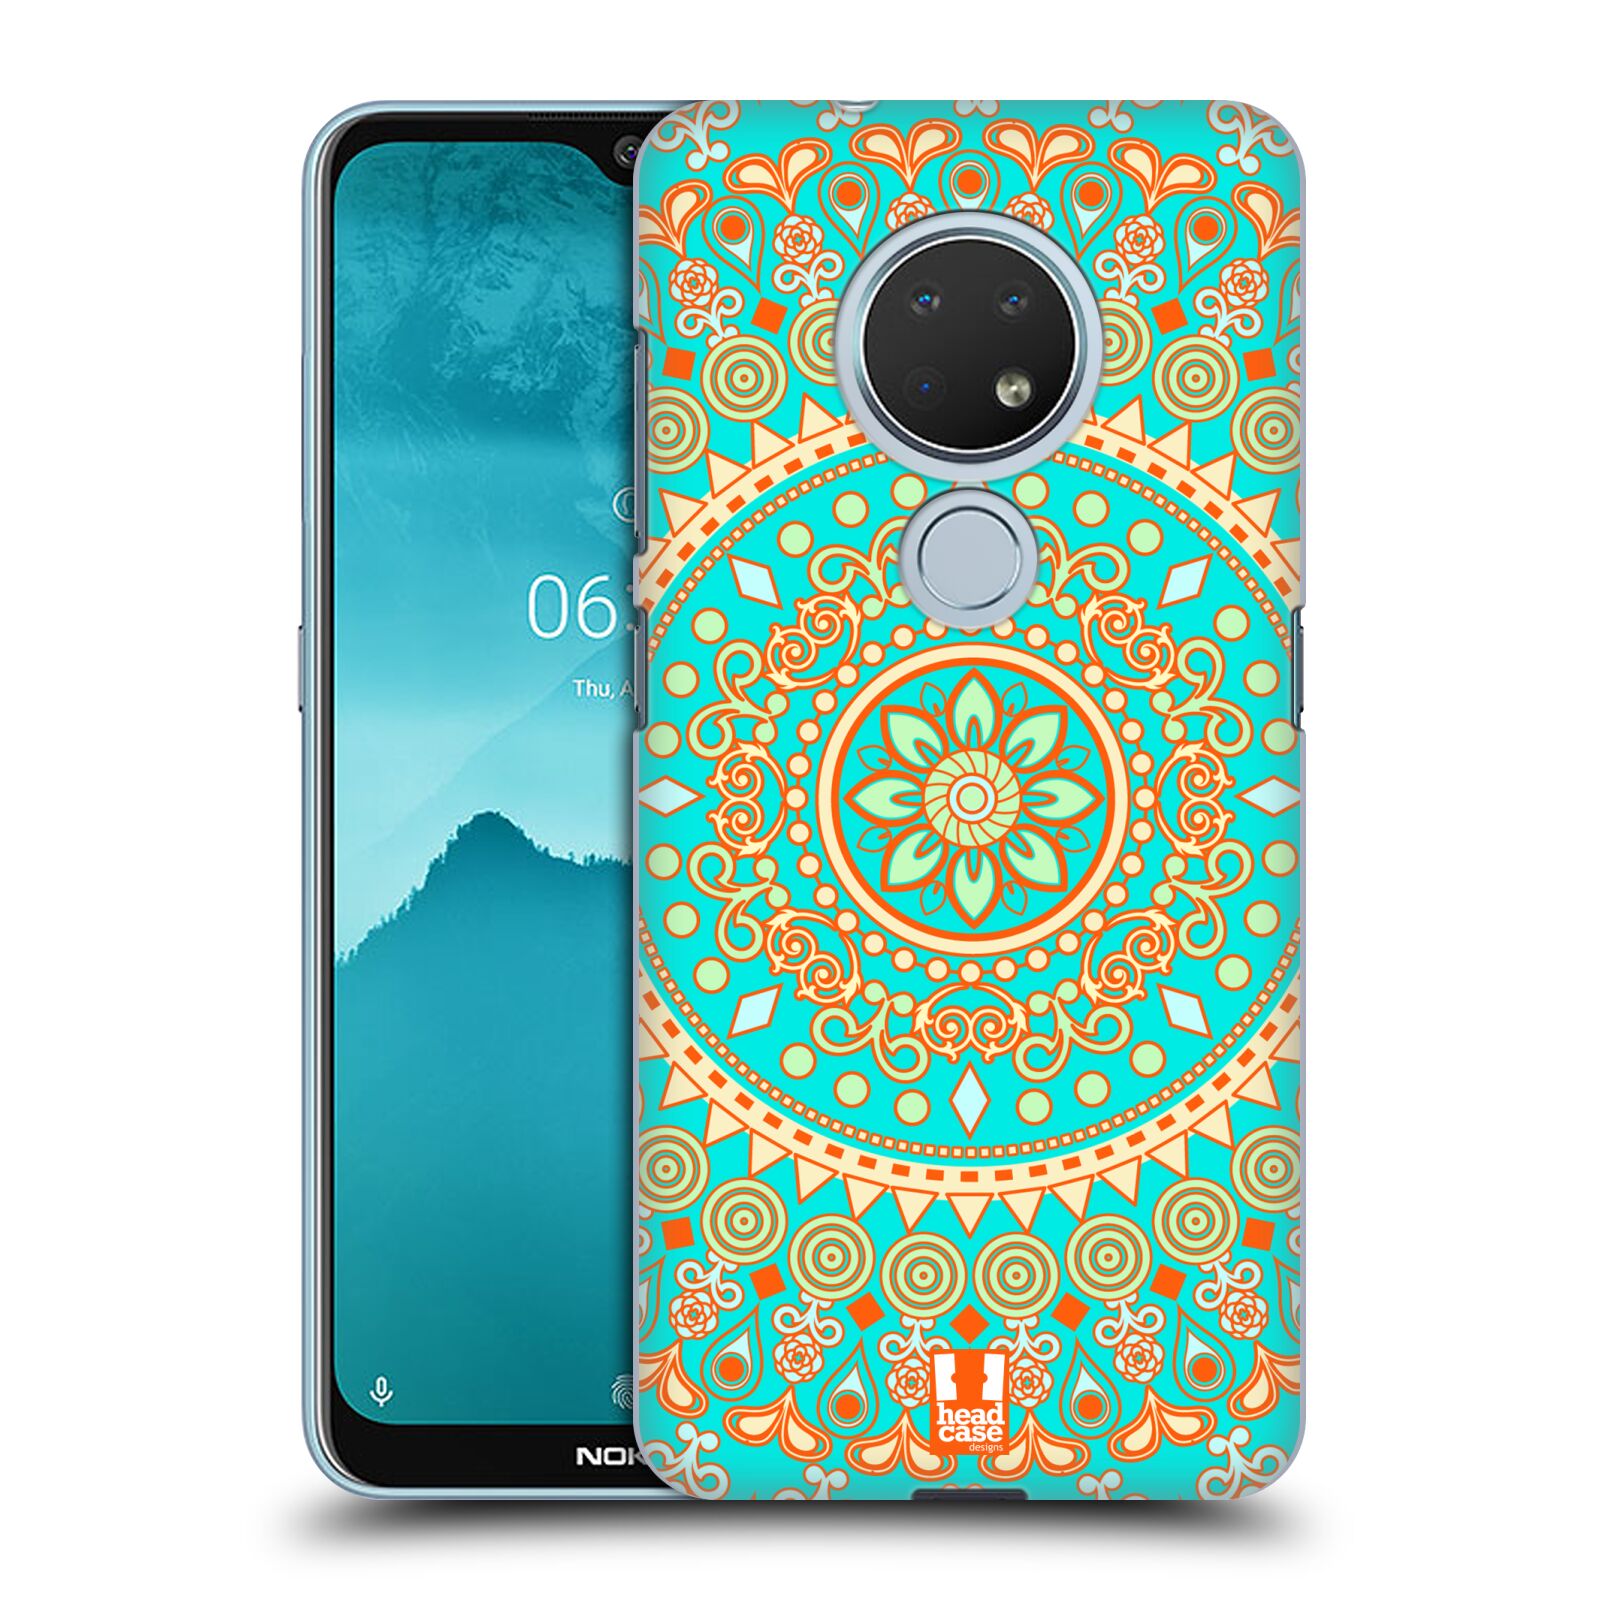 Pouzdro na mobil Nokia 6.2 - HEAD CASE - vzor Indie Mandala slunce barevný motiv TYRKYSOVÁ, ZELENÁ